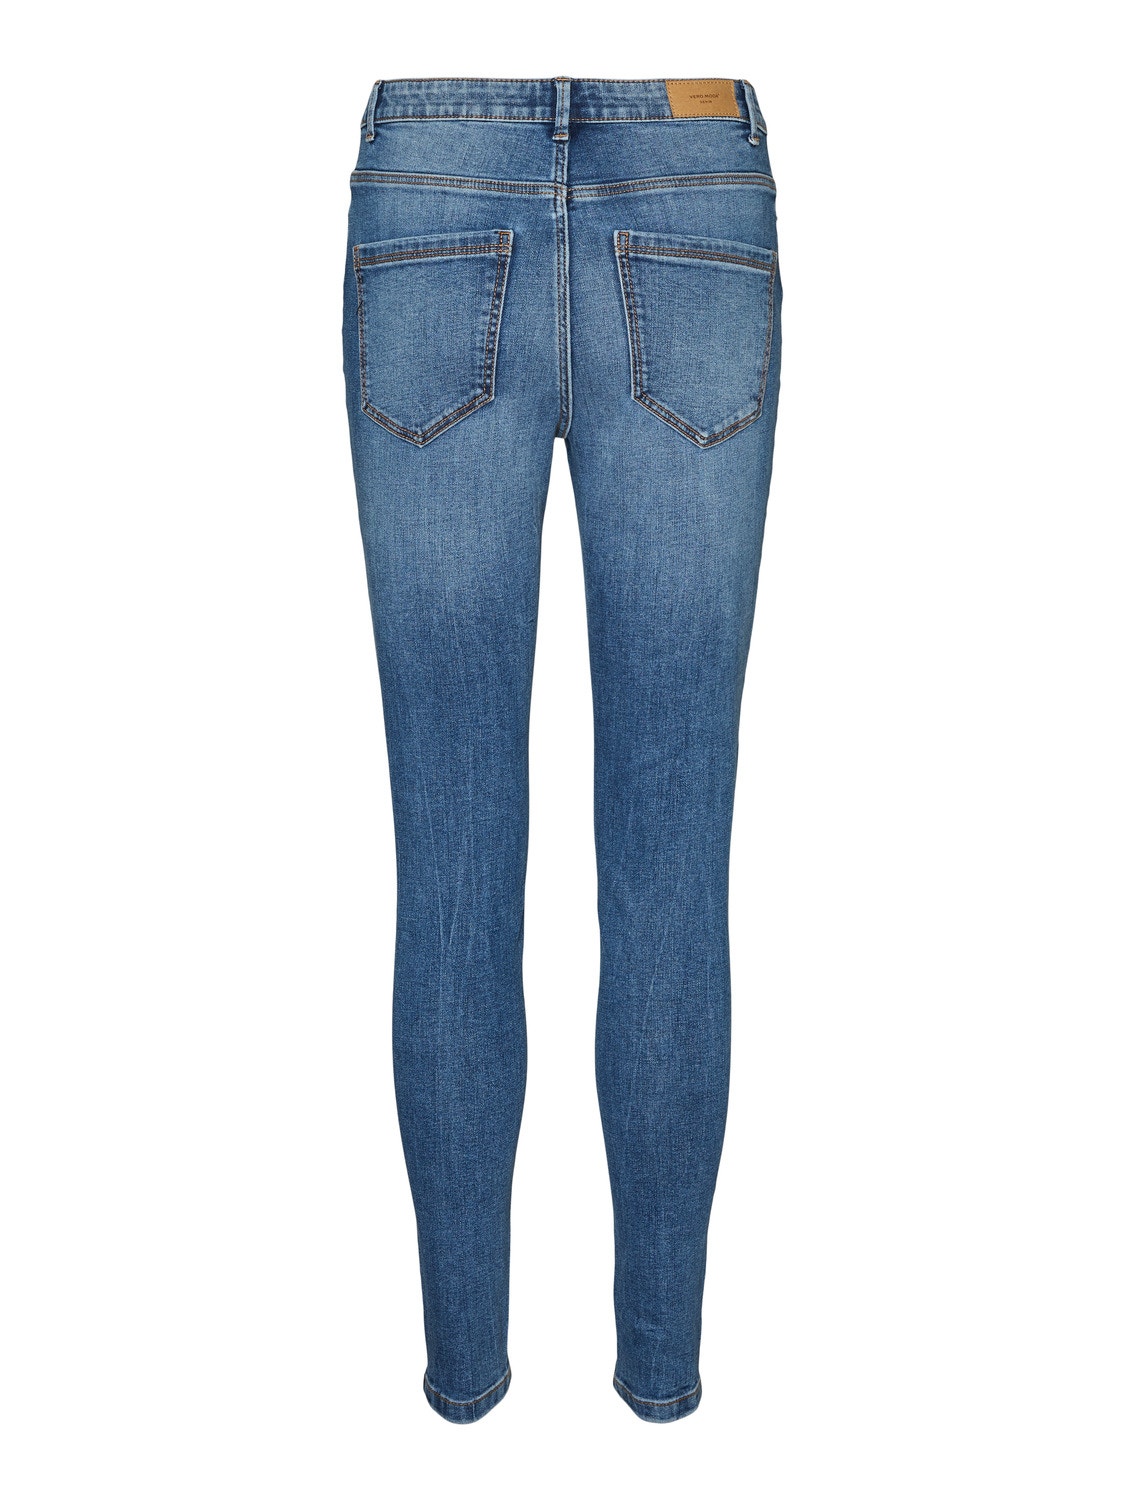 Vero Moda VMSOPHIA Skinny Fit Jeans -Medium Blue Denim - 10264631